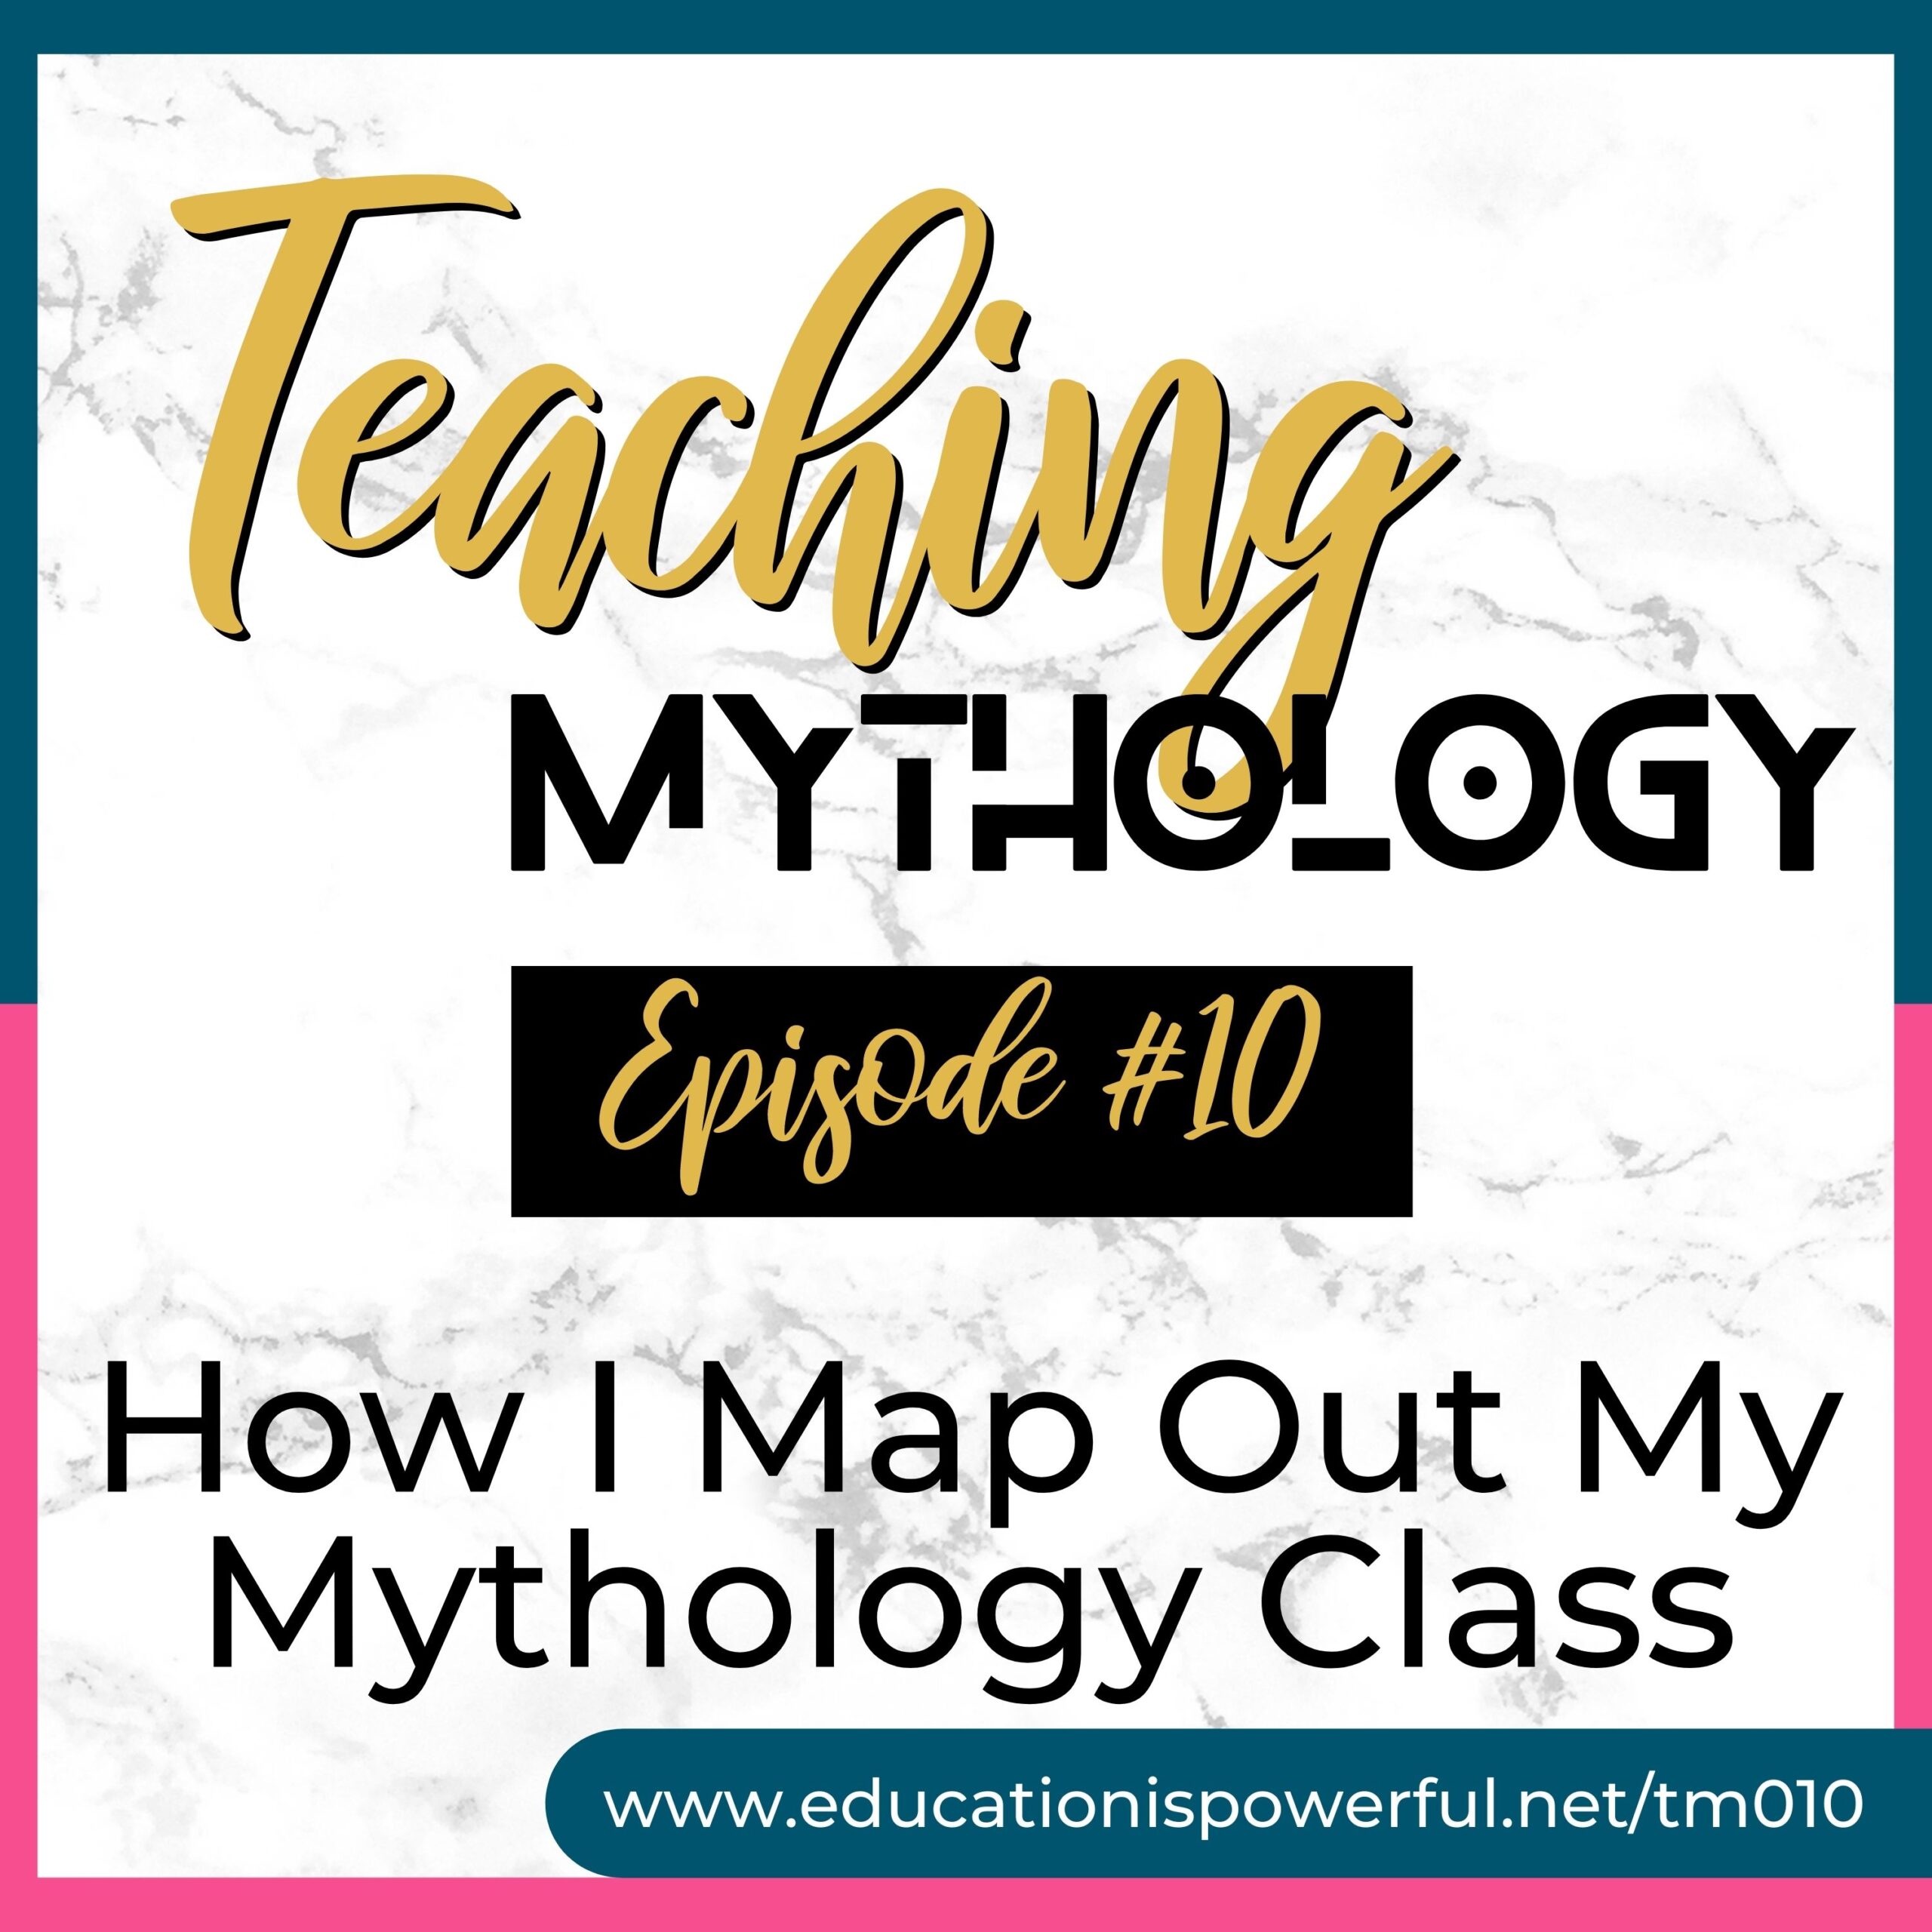 Teaching Mythology Podcast Episode 010: How I Map Out My Mythology Class